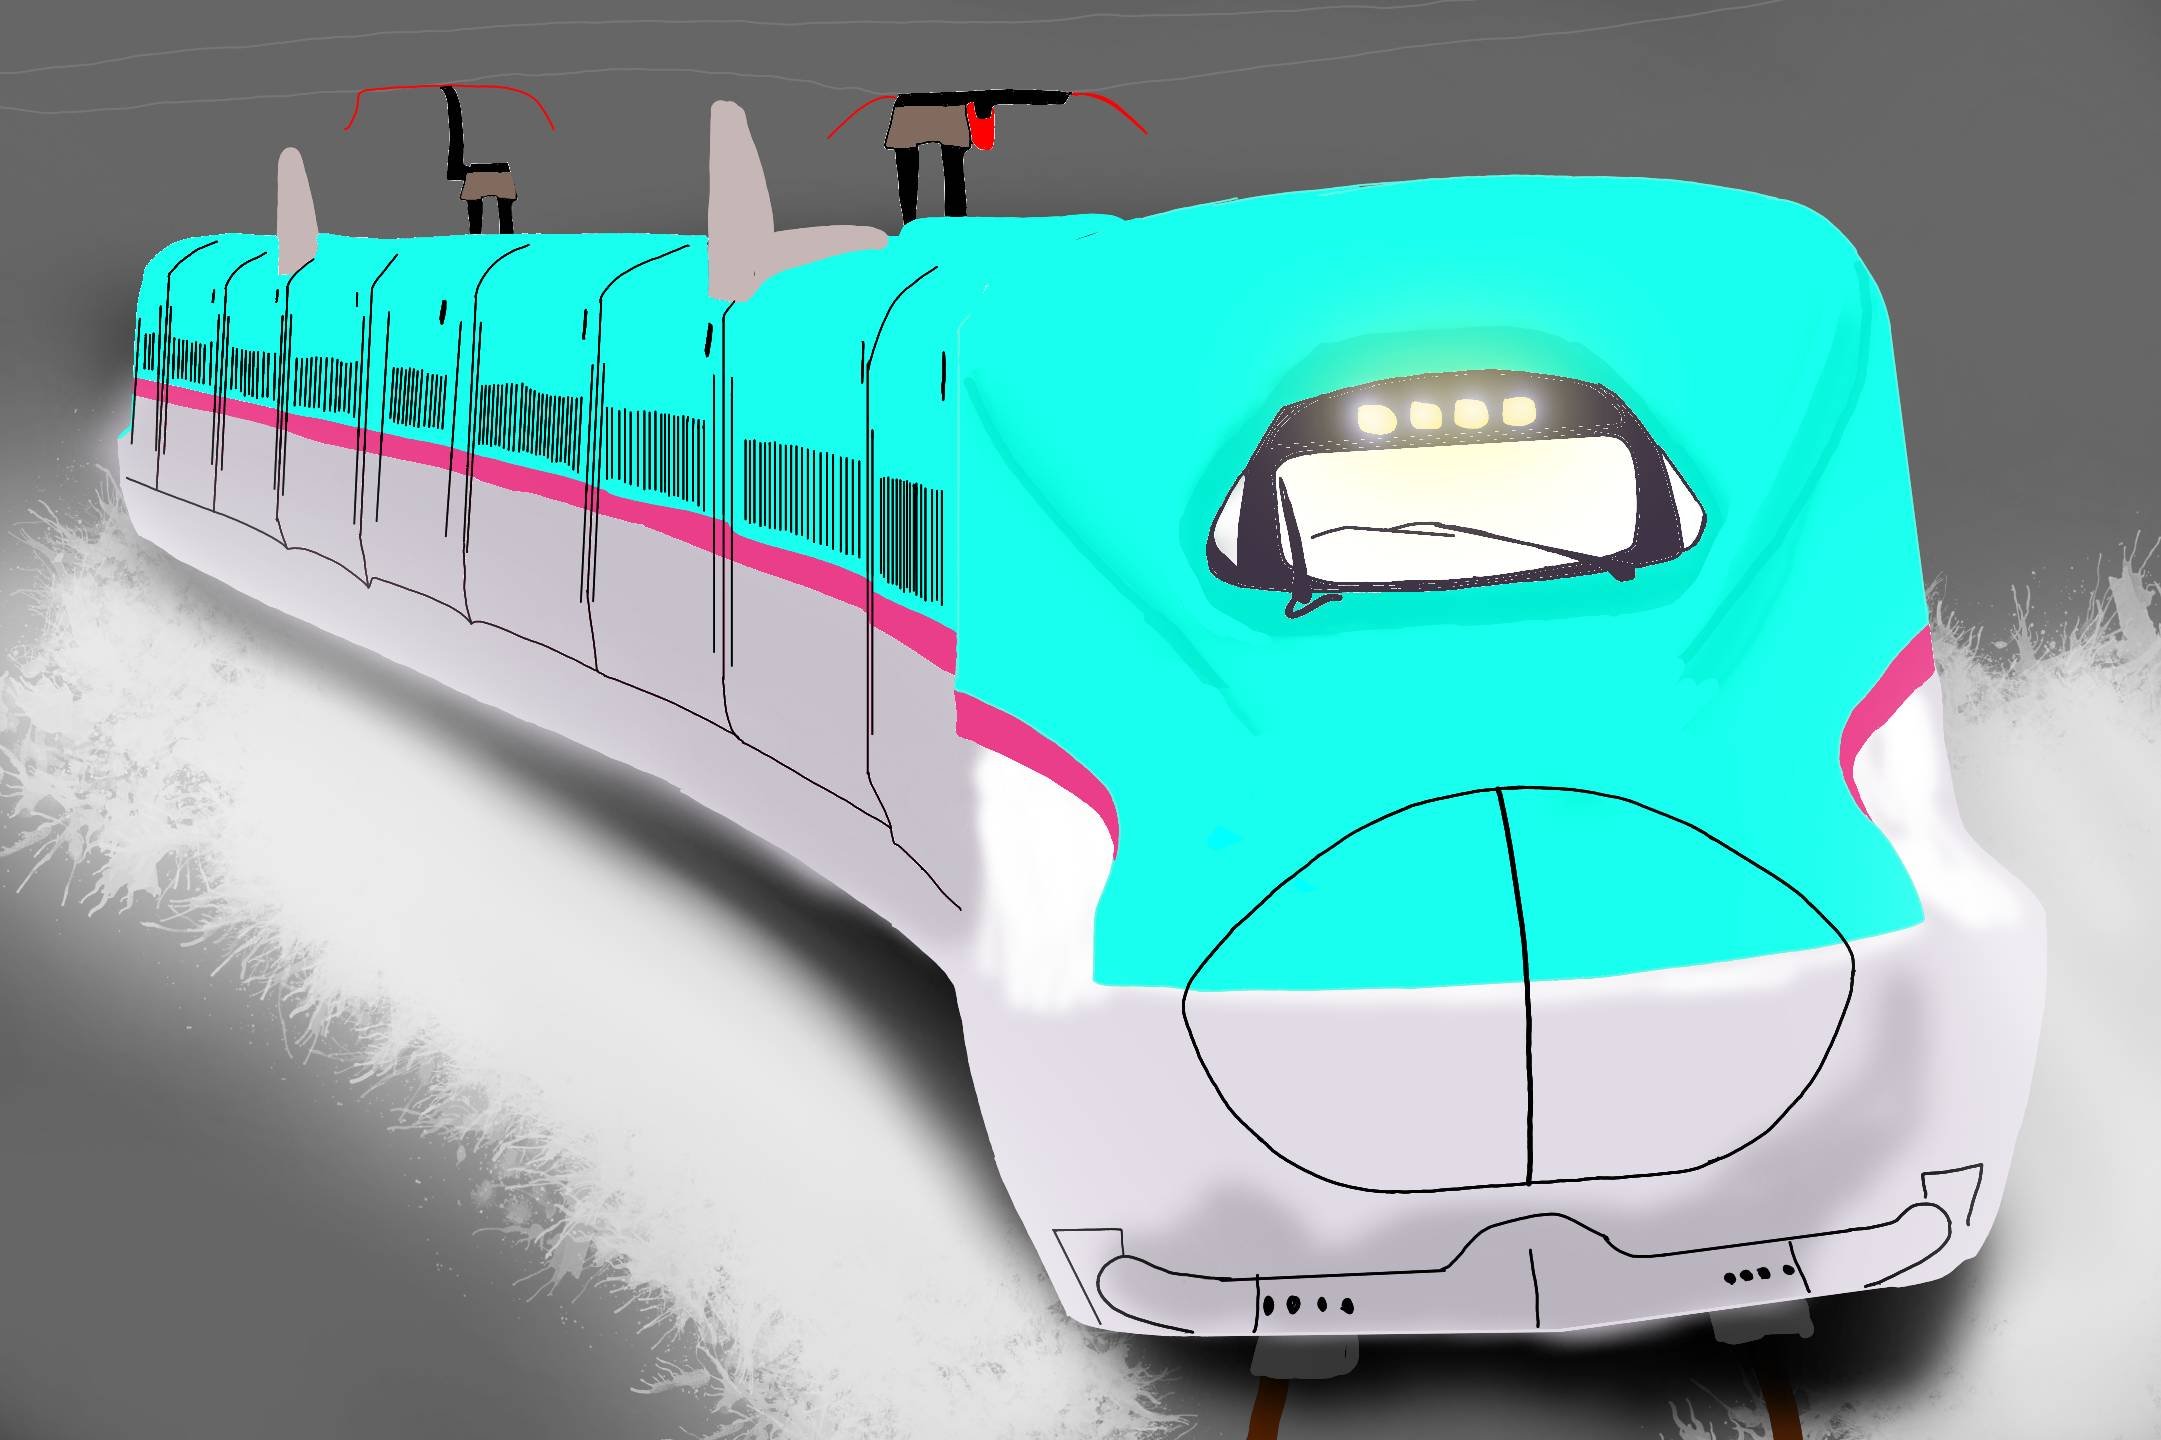 Twitter 上的 モアイ E5系描きました デビューして10年経ち東北新幹線では主役になりましたね まだ乗ったことがないので乗ってみたいです Jr東日本 東北新幹線 E5系 はやぶさ 新幹線 鉄道イラスト 描き鉄 鉄道 鉄道好きな人と繋がりたい 絵描きさんと